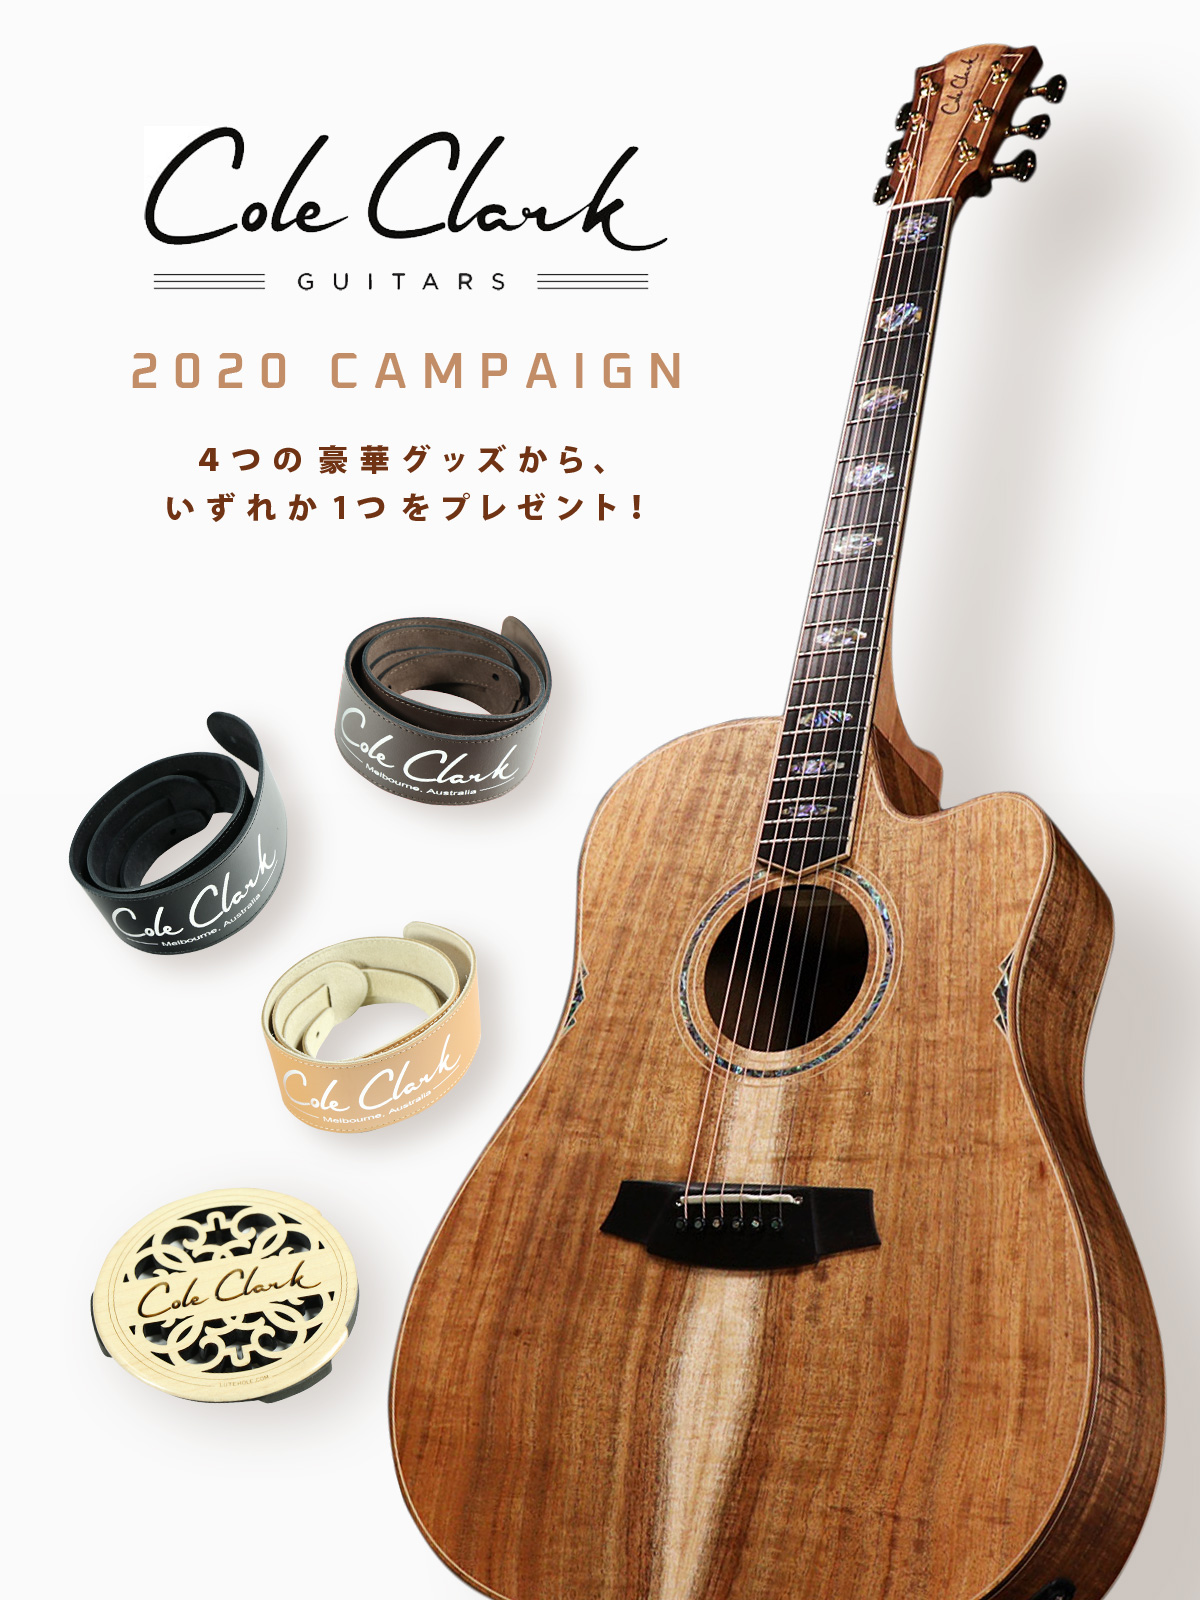 オーガニックかつナチュラルなデザインが魅力的、Cole Clarkギター ...